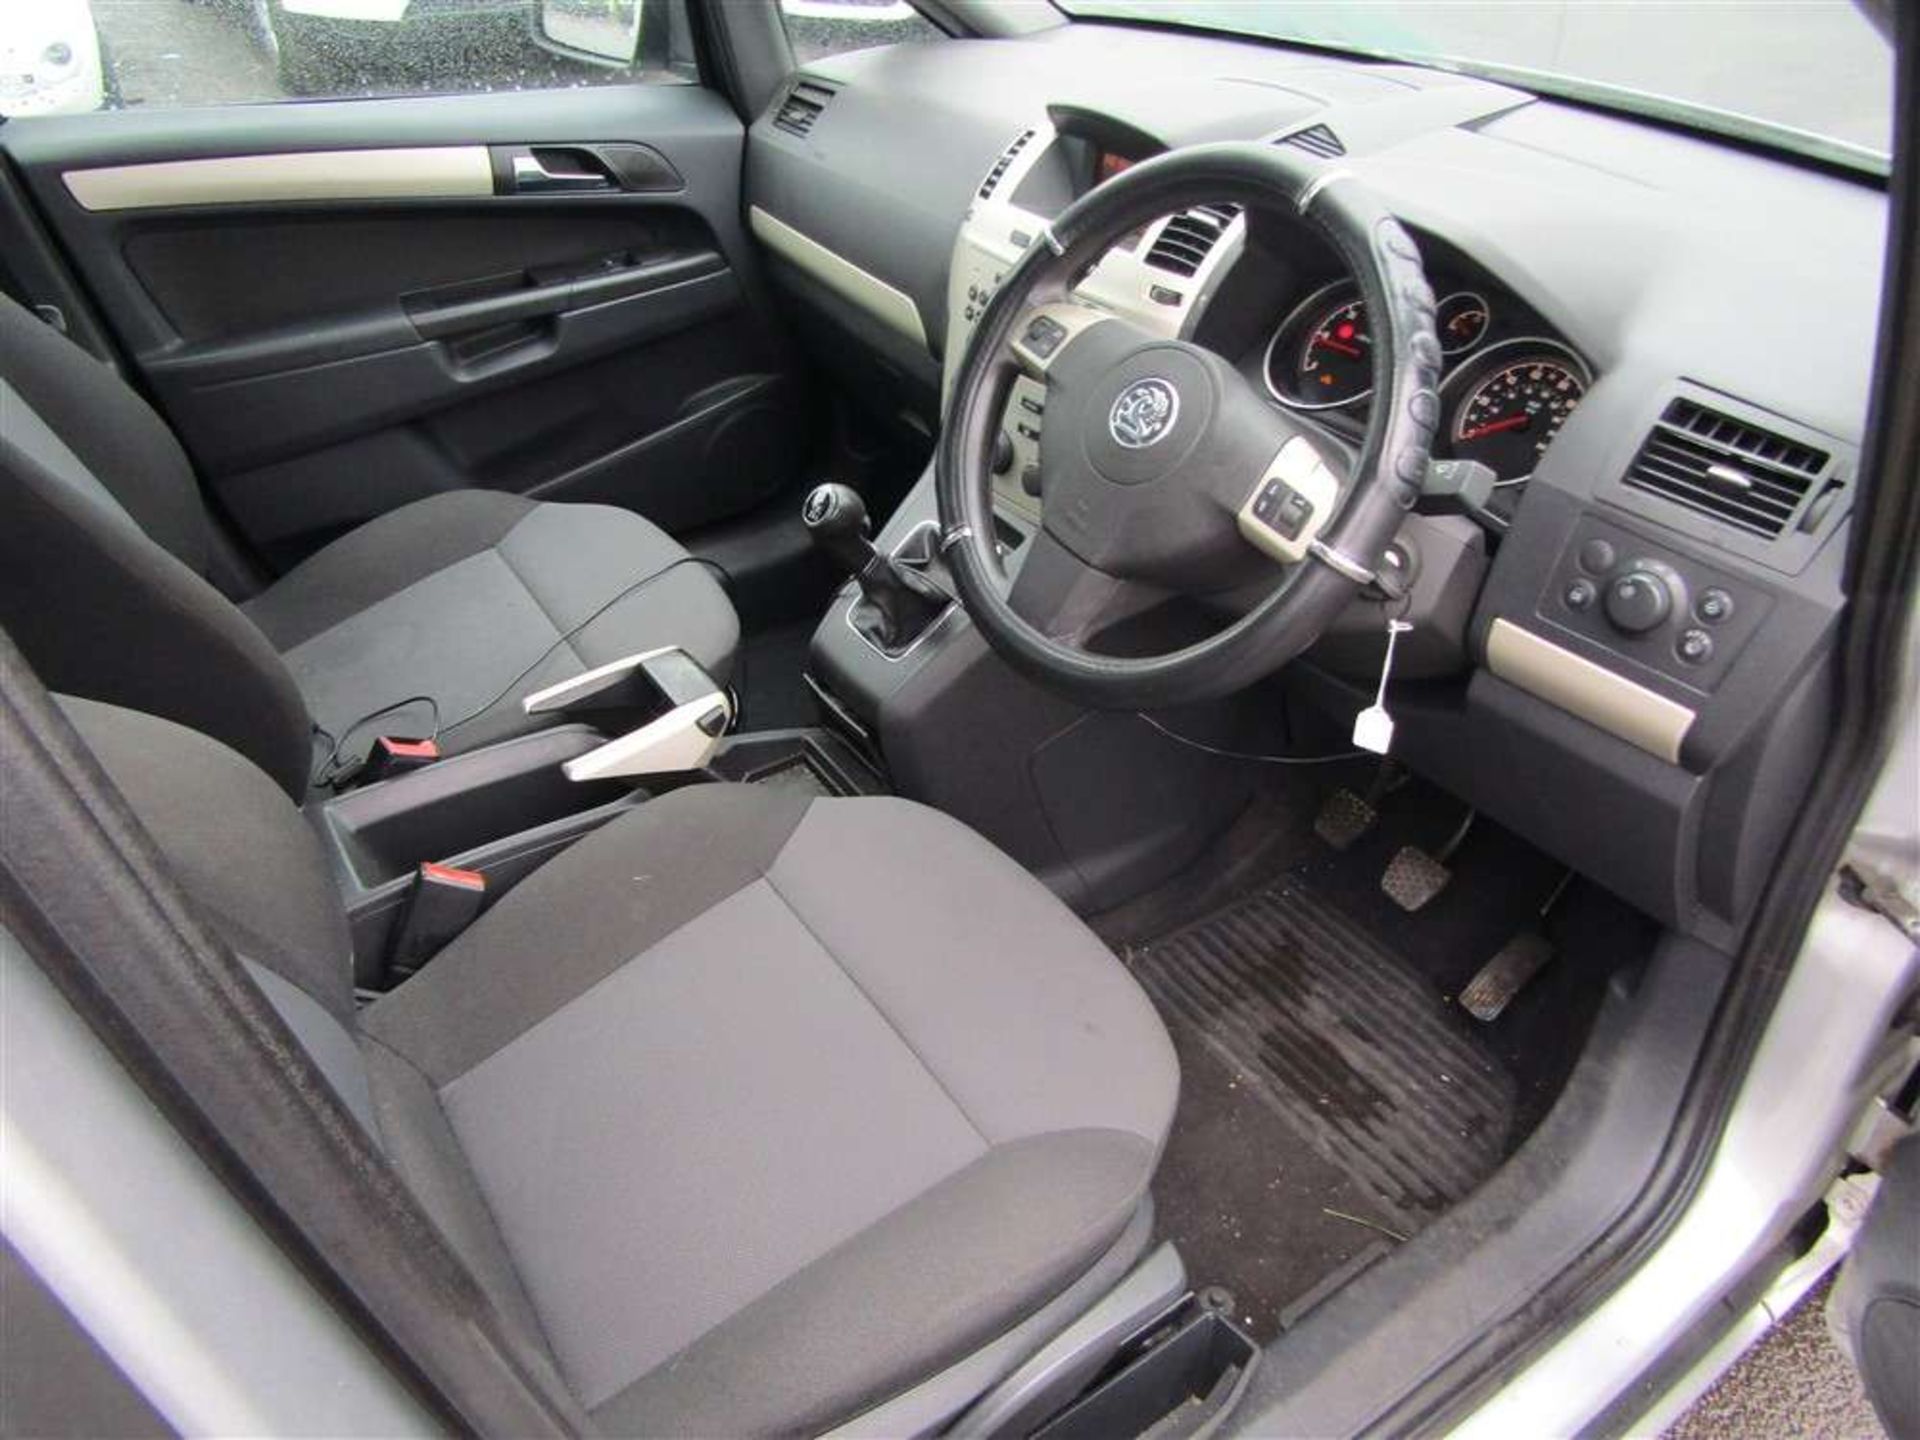 2008 08 reg Vauxhall Zafira Exclusiv CDTI - Image 5 of 6